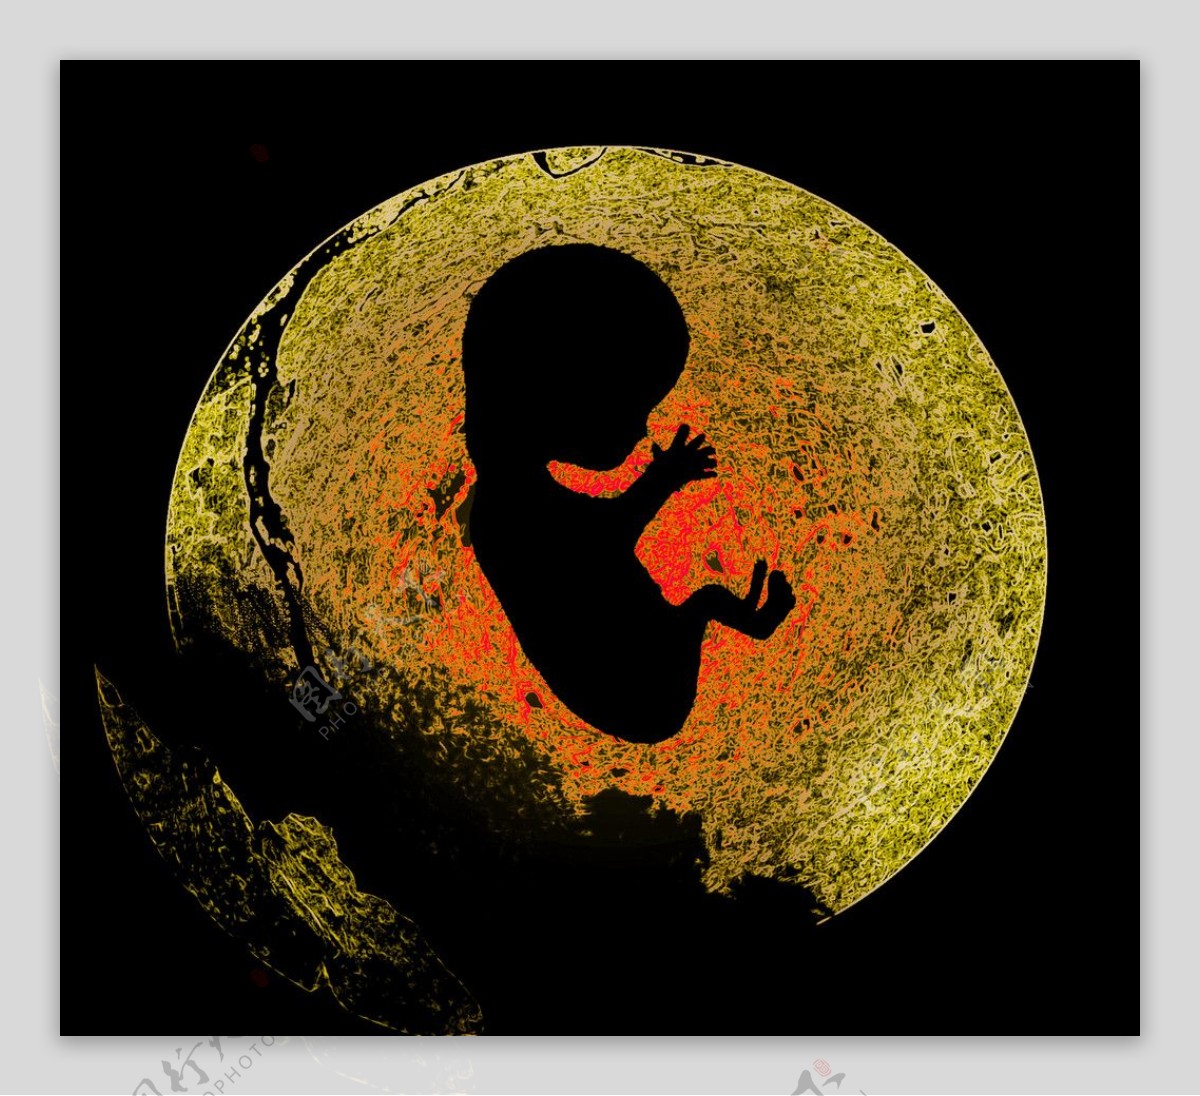 出生受孕过程图片